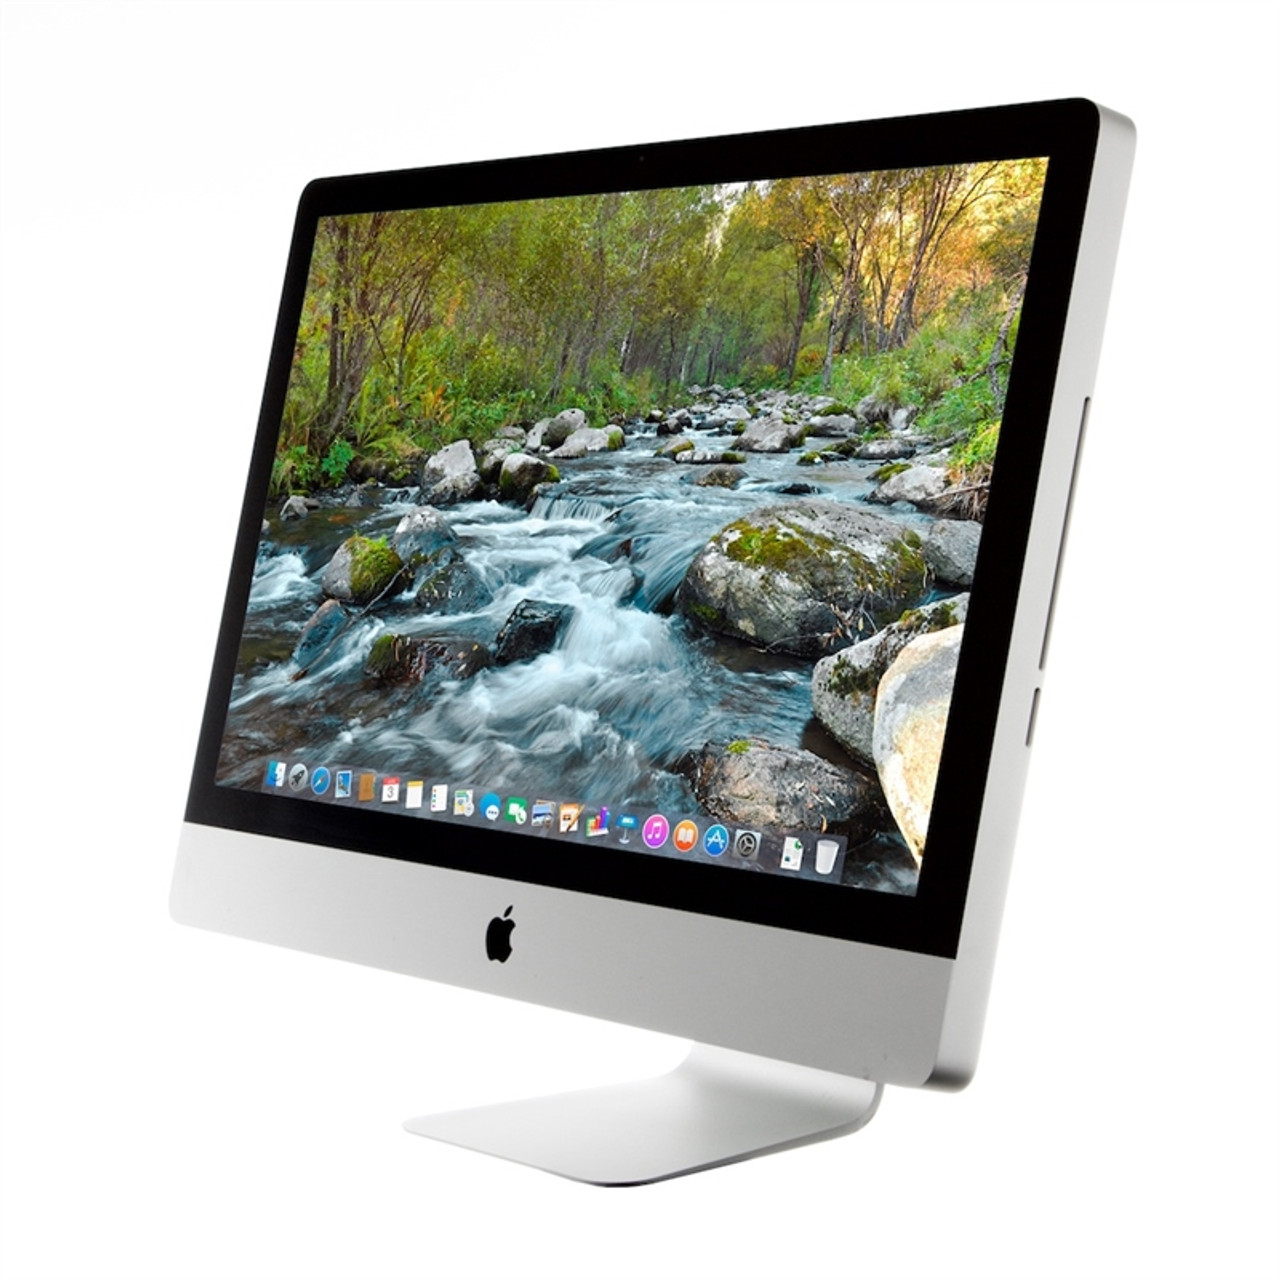 iMac 27インチ Mid2011本体と電源コードのみになります